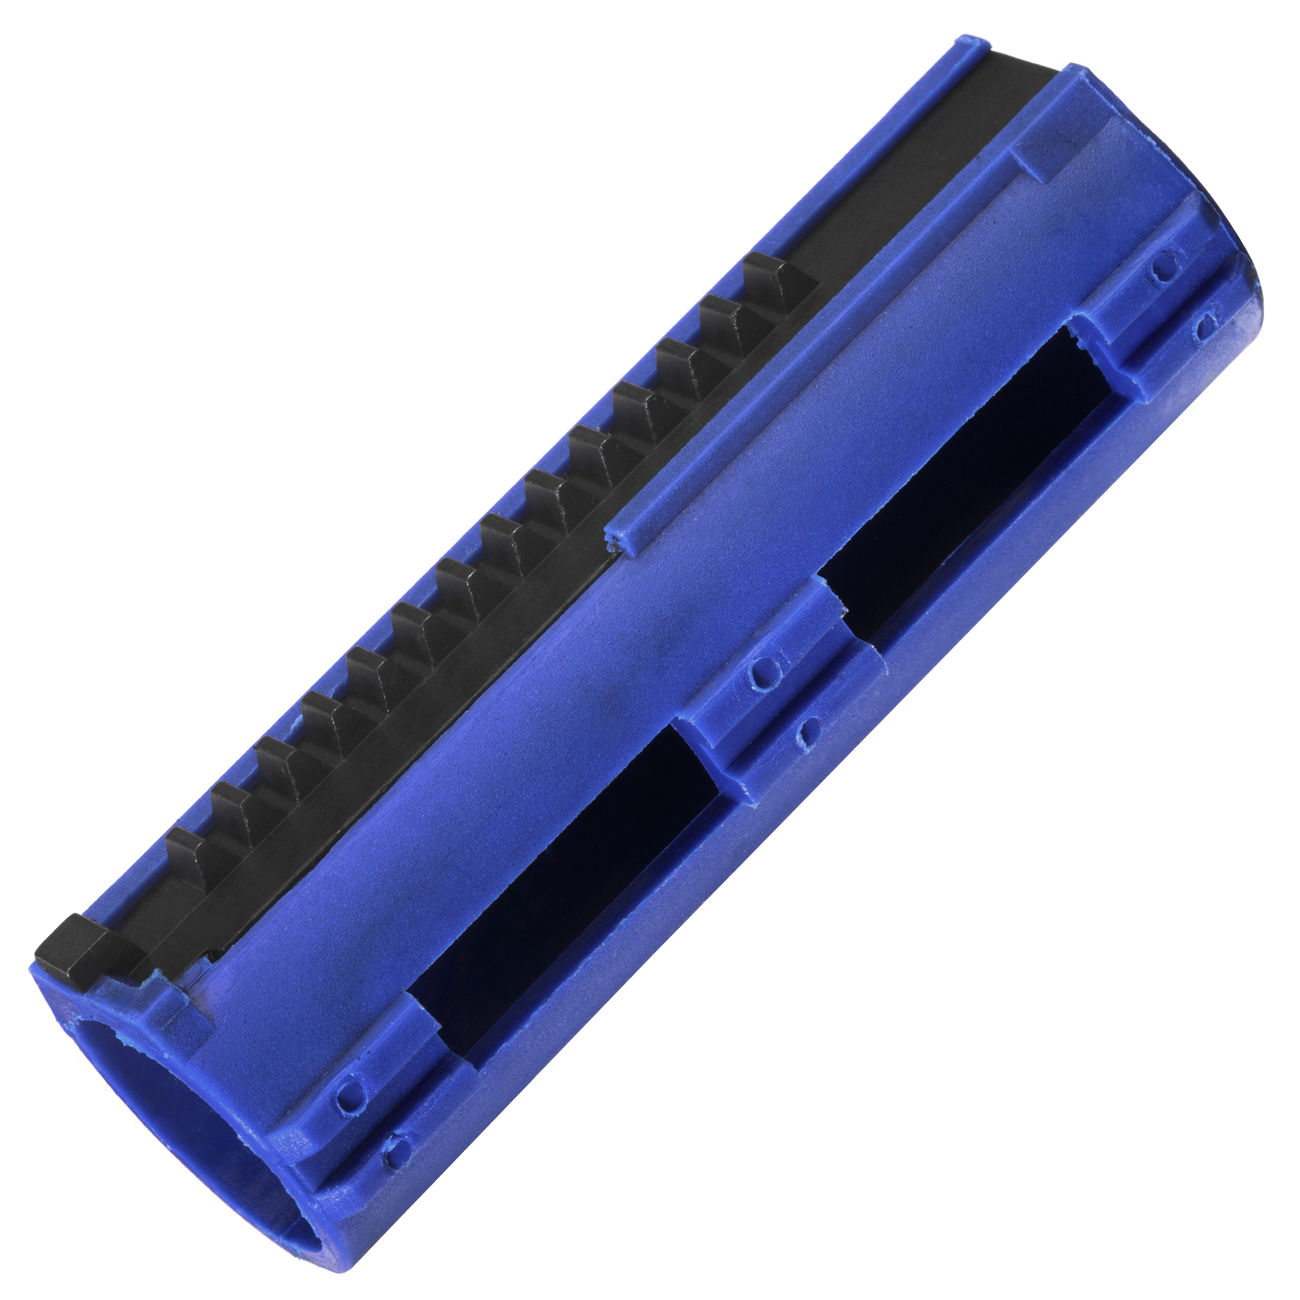 BAAL Airsoft Polycarbonate LW Piston mit 14 Zähne - Halbzahn blau Bild 1